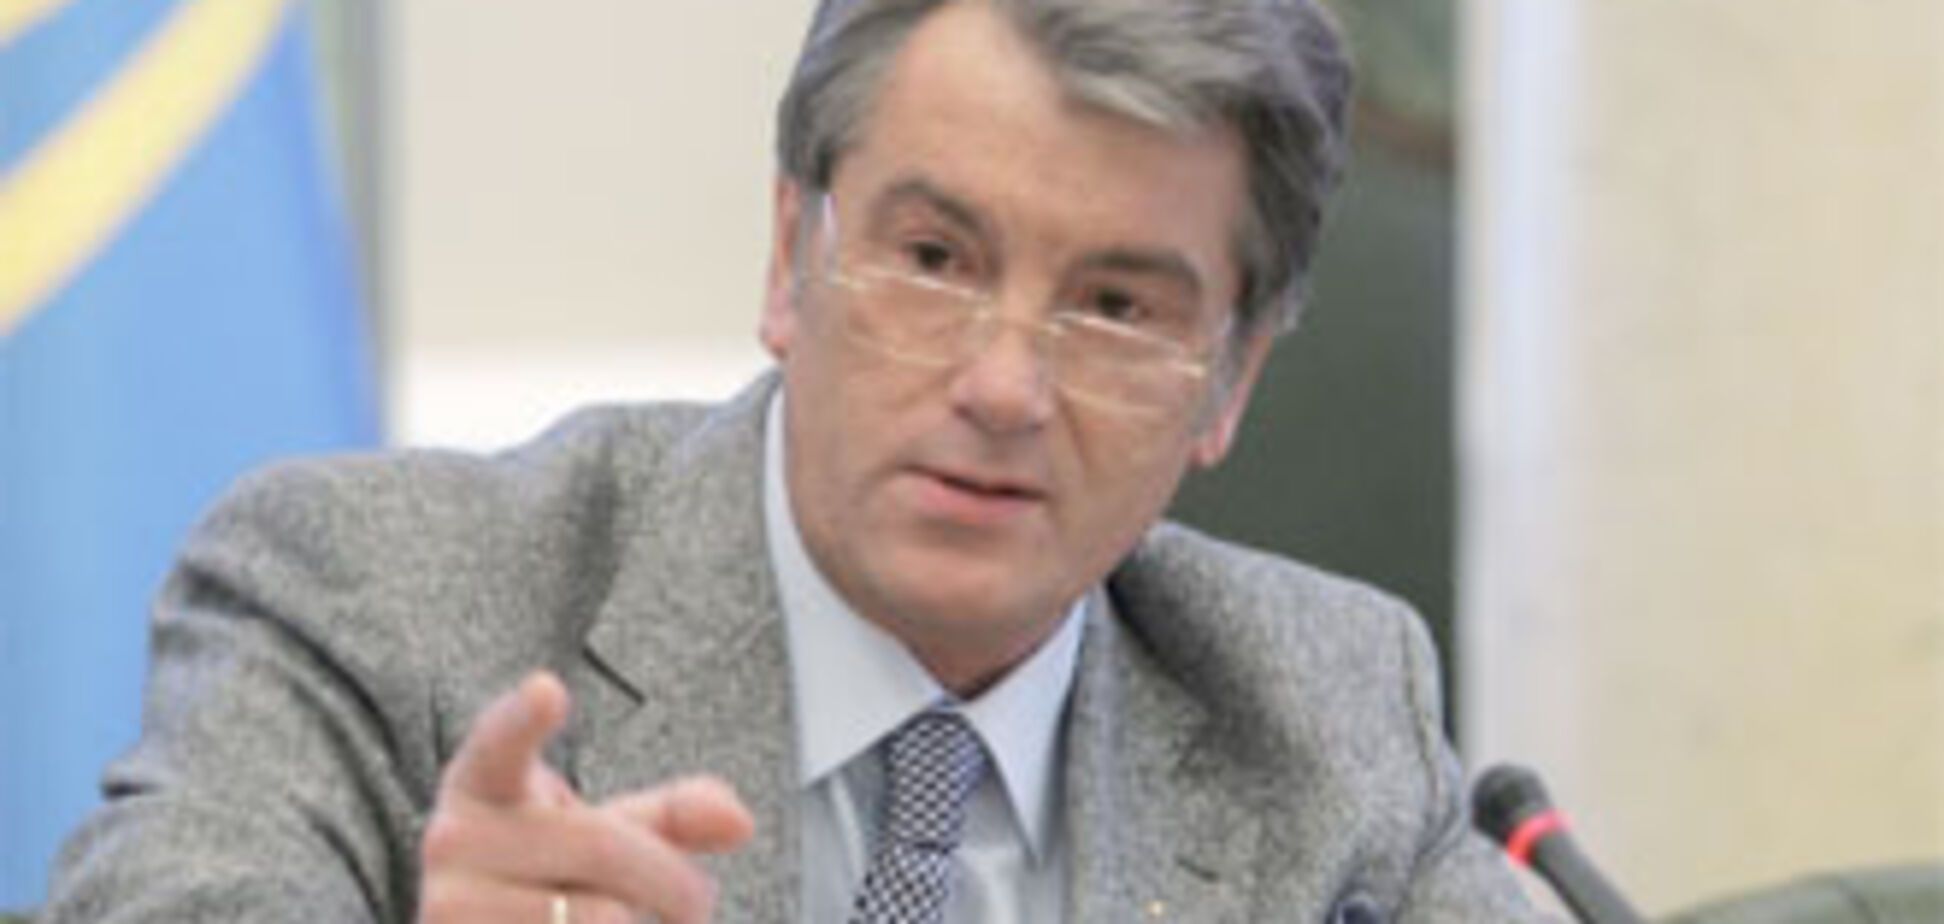 Ющенко: Тимошенко виновата в девальвации гривны